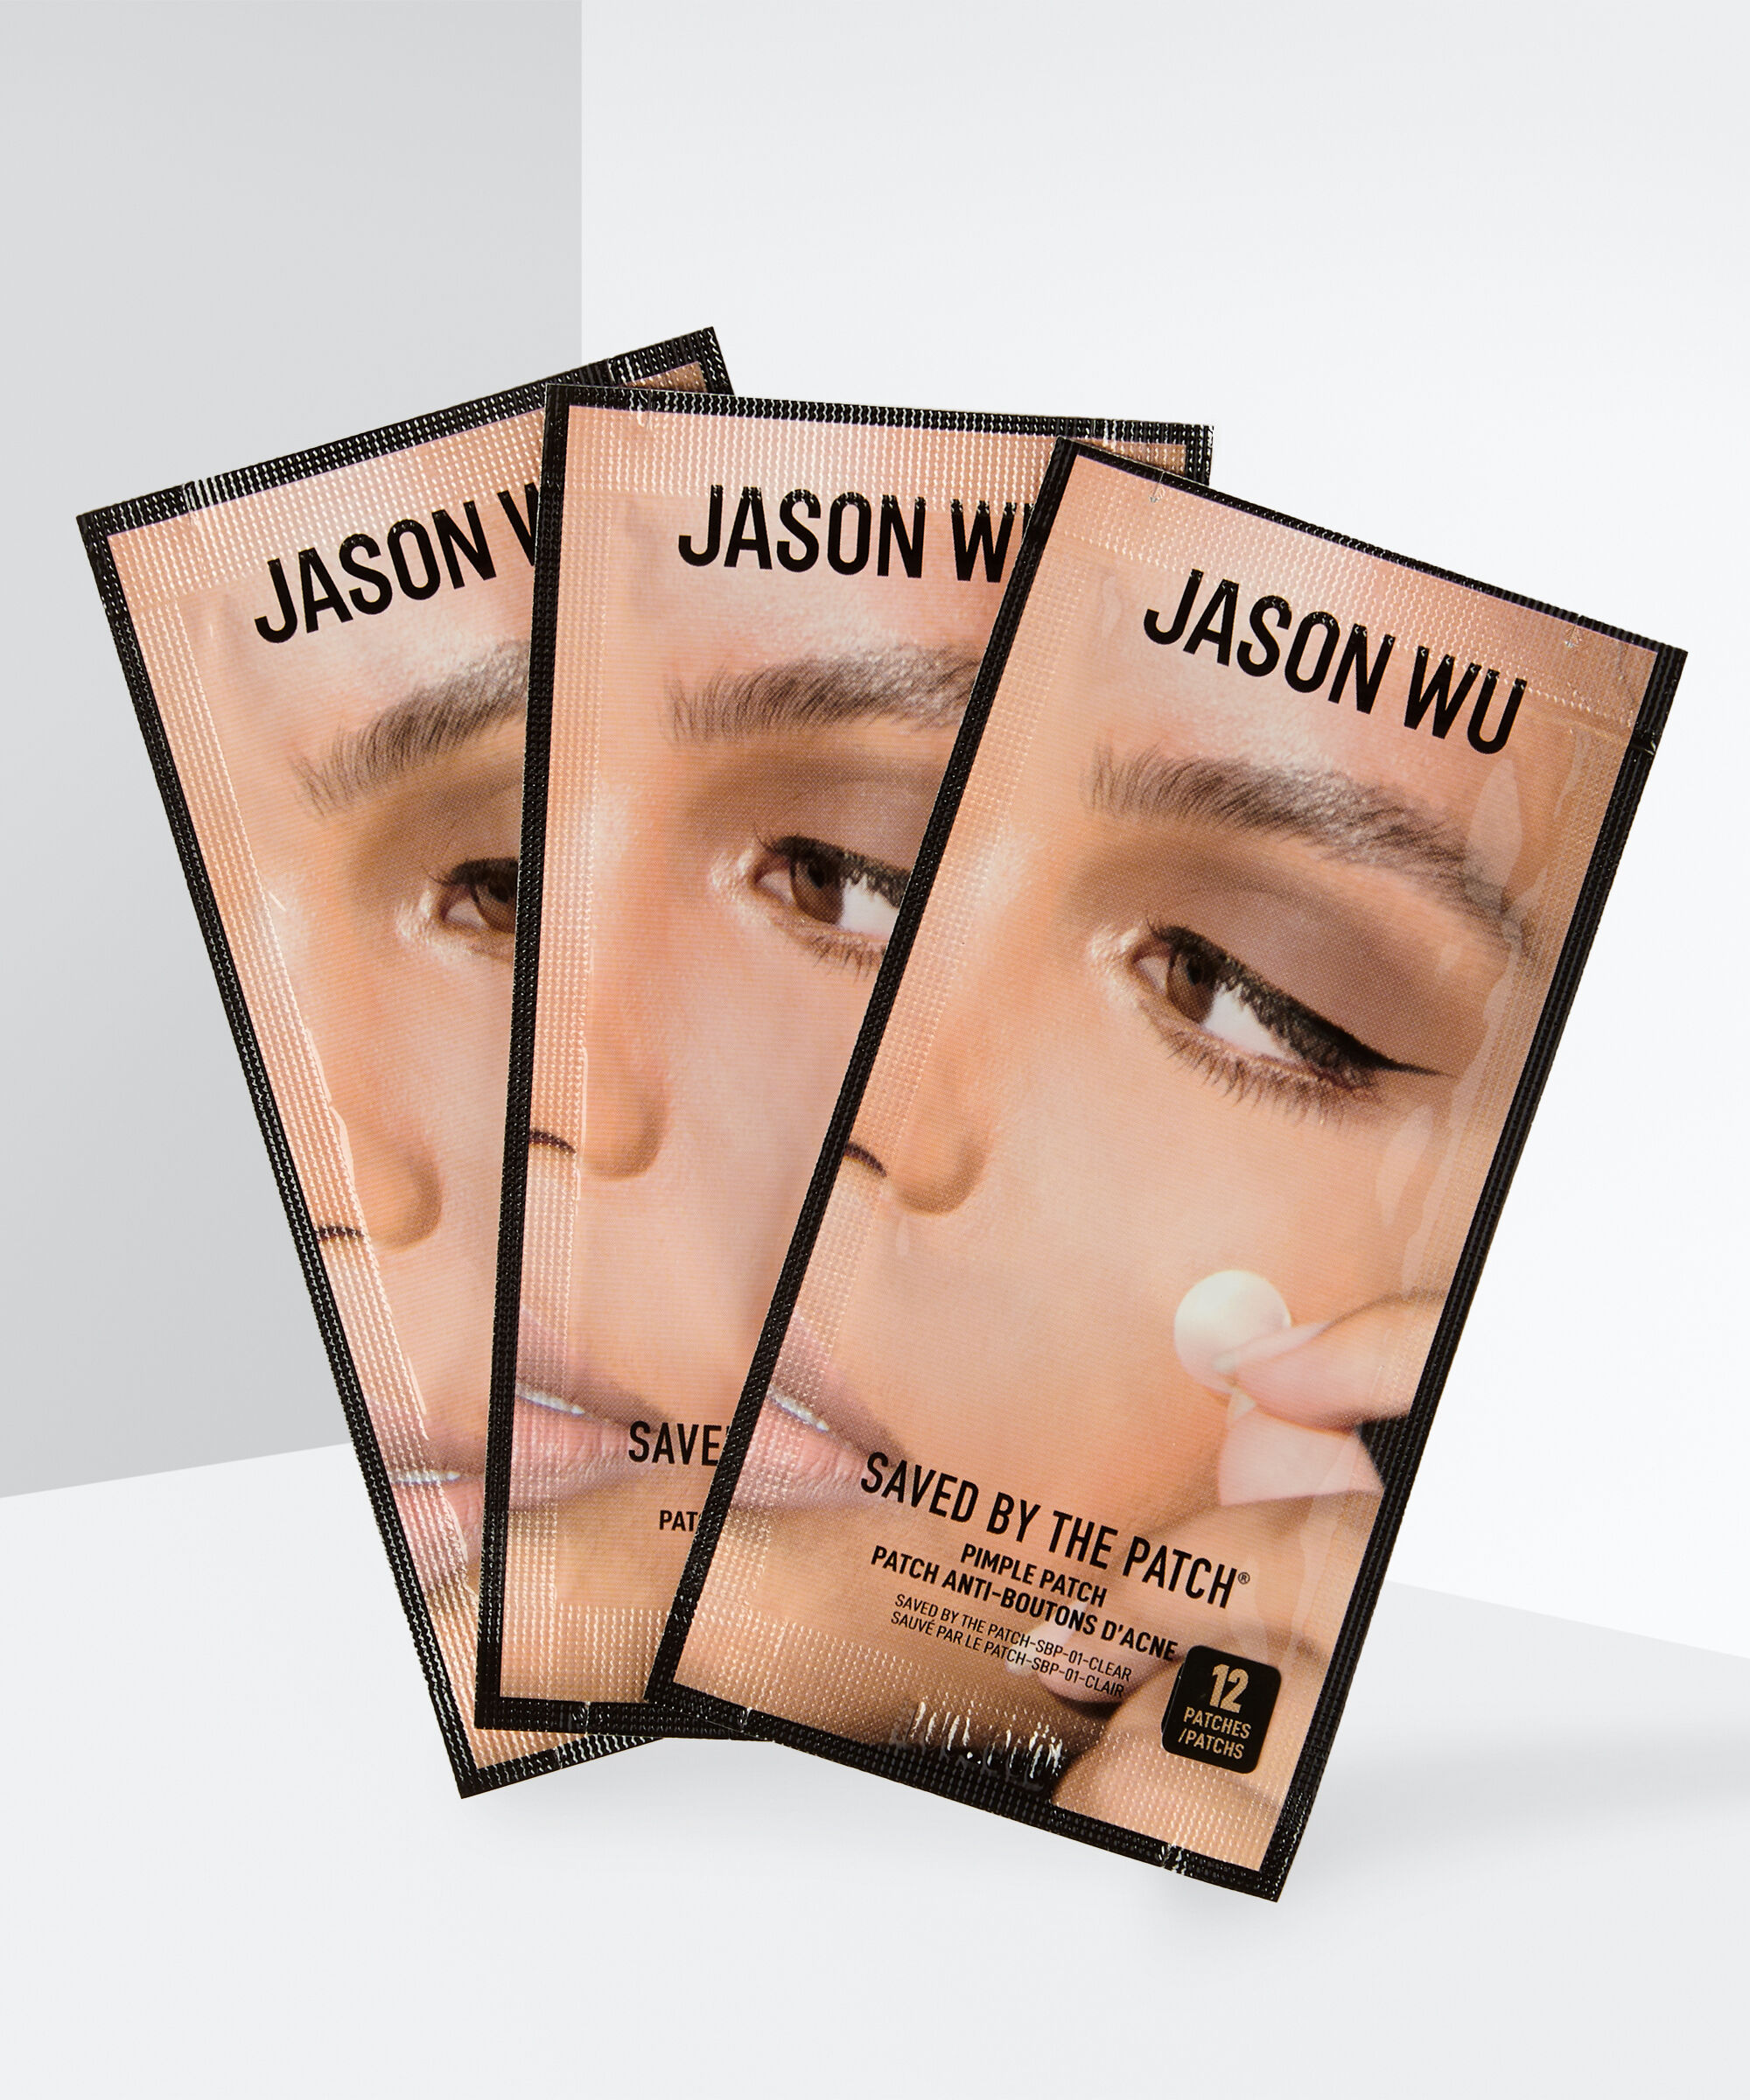 Jason Wu Beauty - Saved By the Patch Pimple Patch